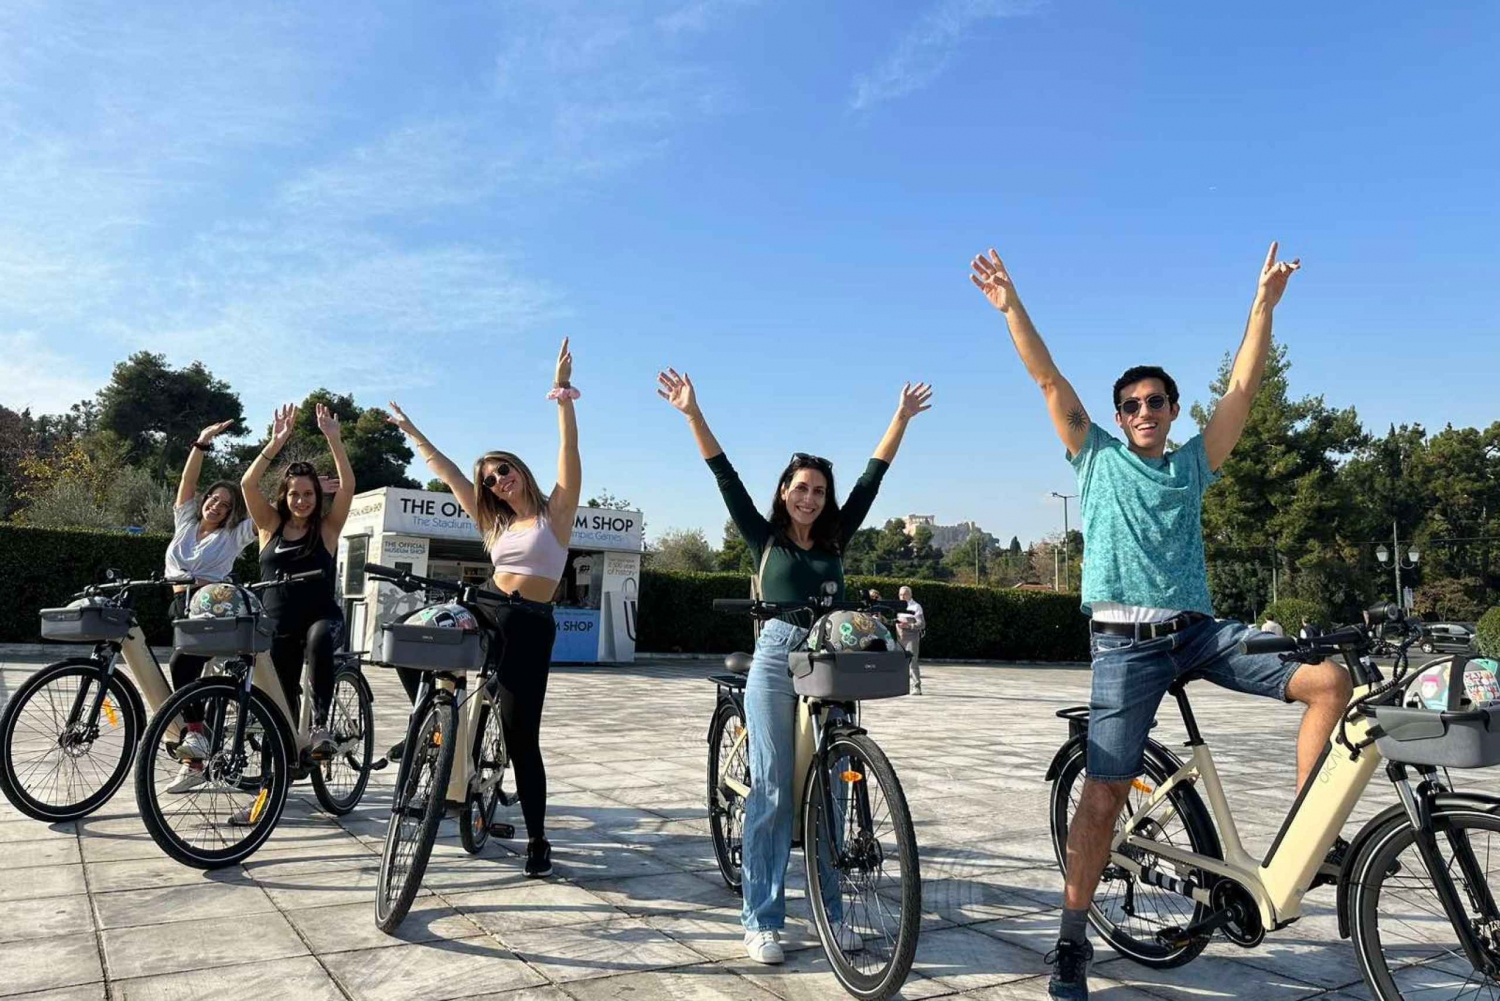 Ateny: wycieczka rowerem elektrycznym po Akropolu i starożytnych ruinach